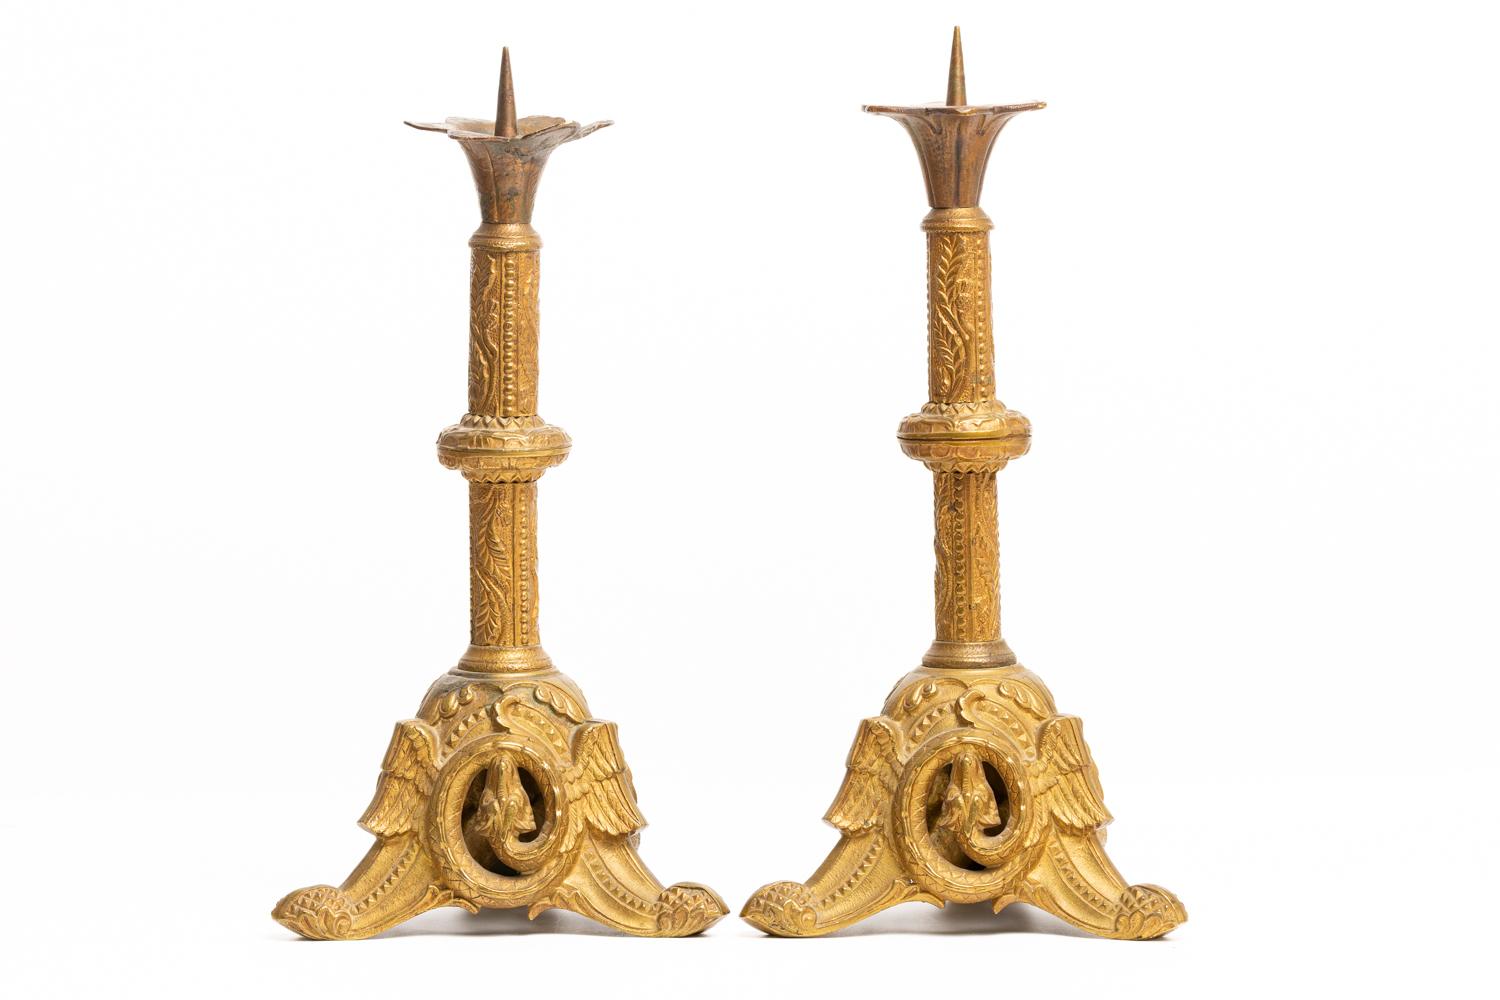 Seltenes und sehr verziertes Paar französischer Altarleuchter aus vergoldetem Messing aus dem 19. Die Kerzenhalter sind wunderschön mit Blattwerk und geometrischen Mustern verziert. Dreieckiger Sockel mit geflügelten Drachen auf jeder Seite des